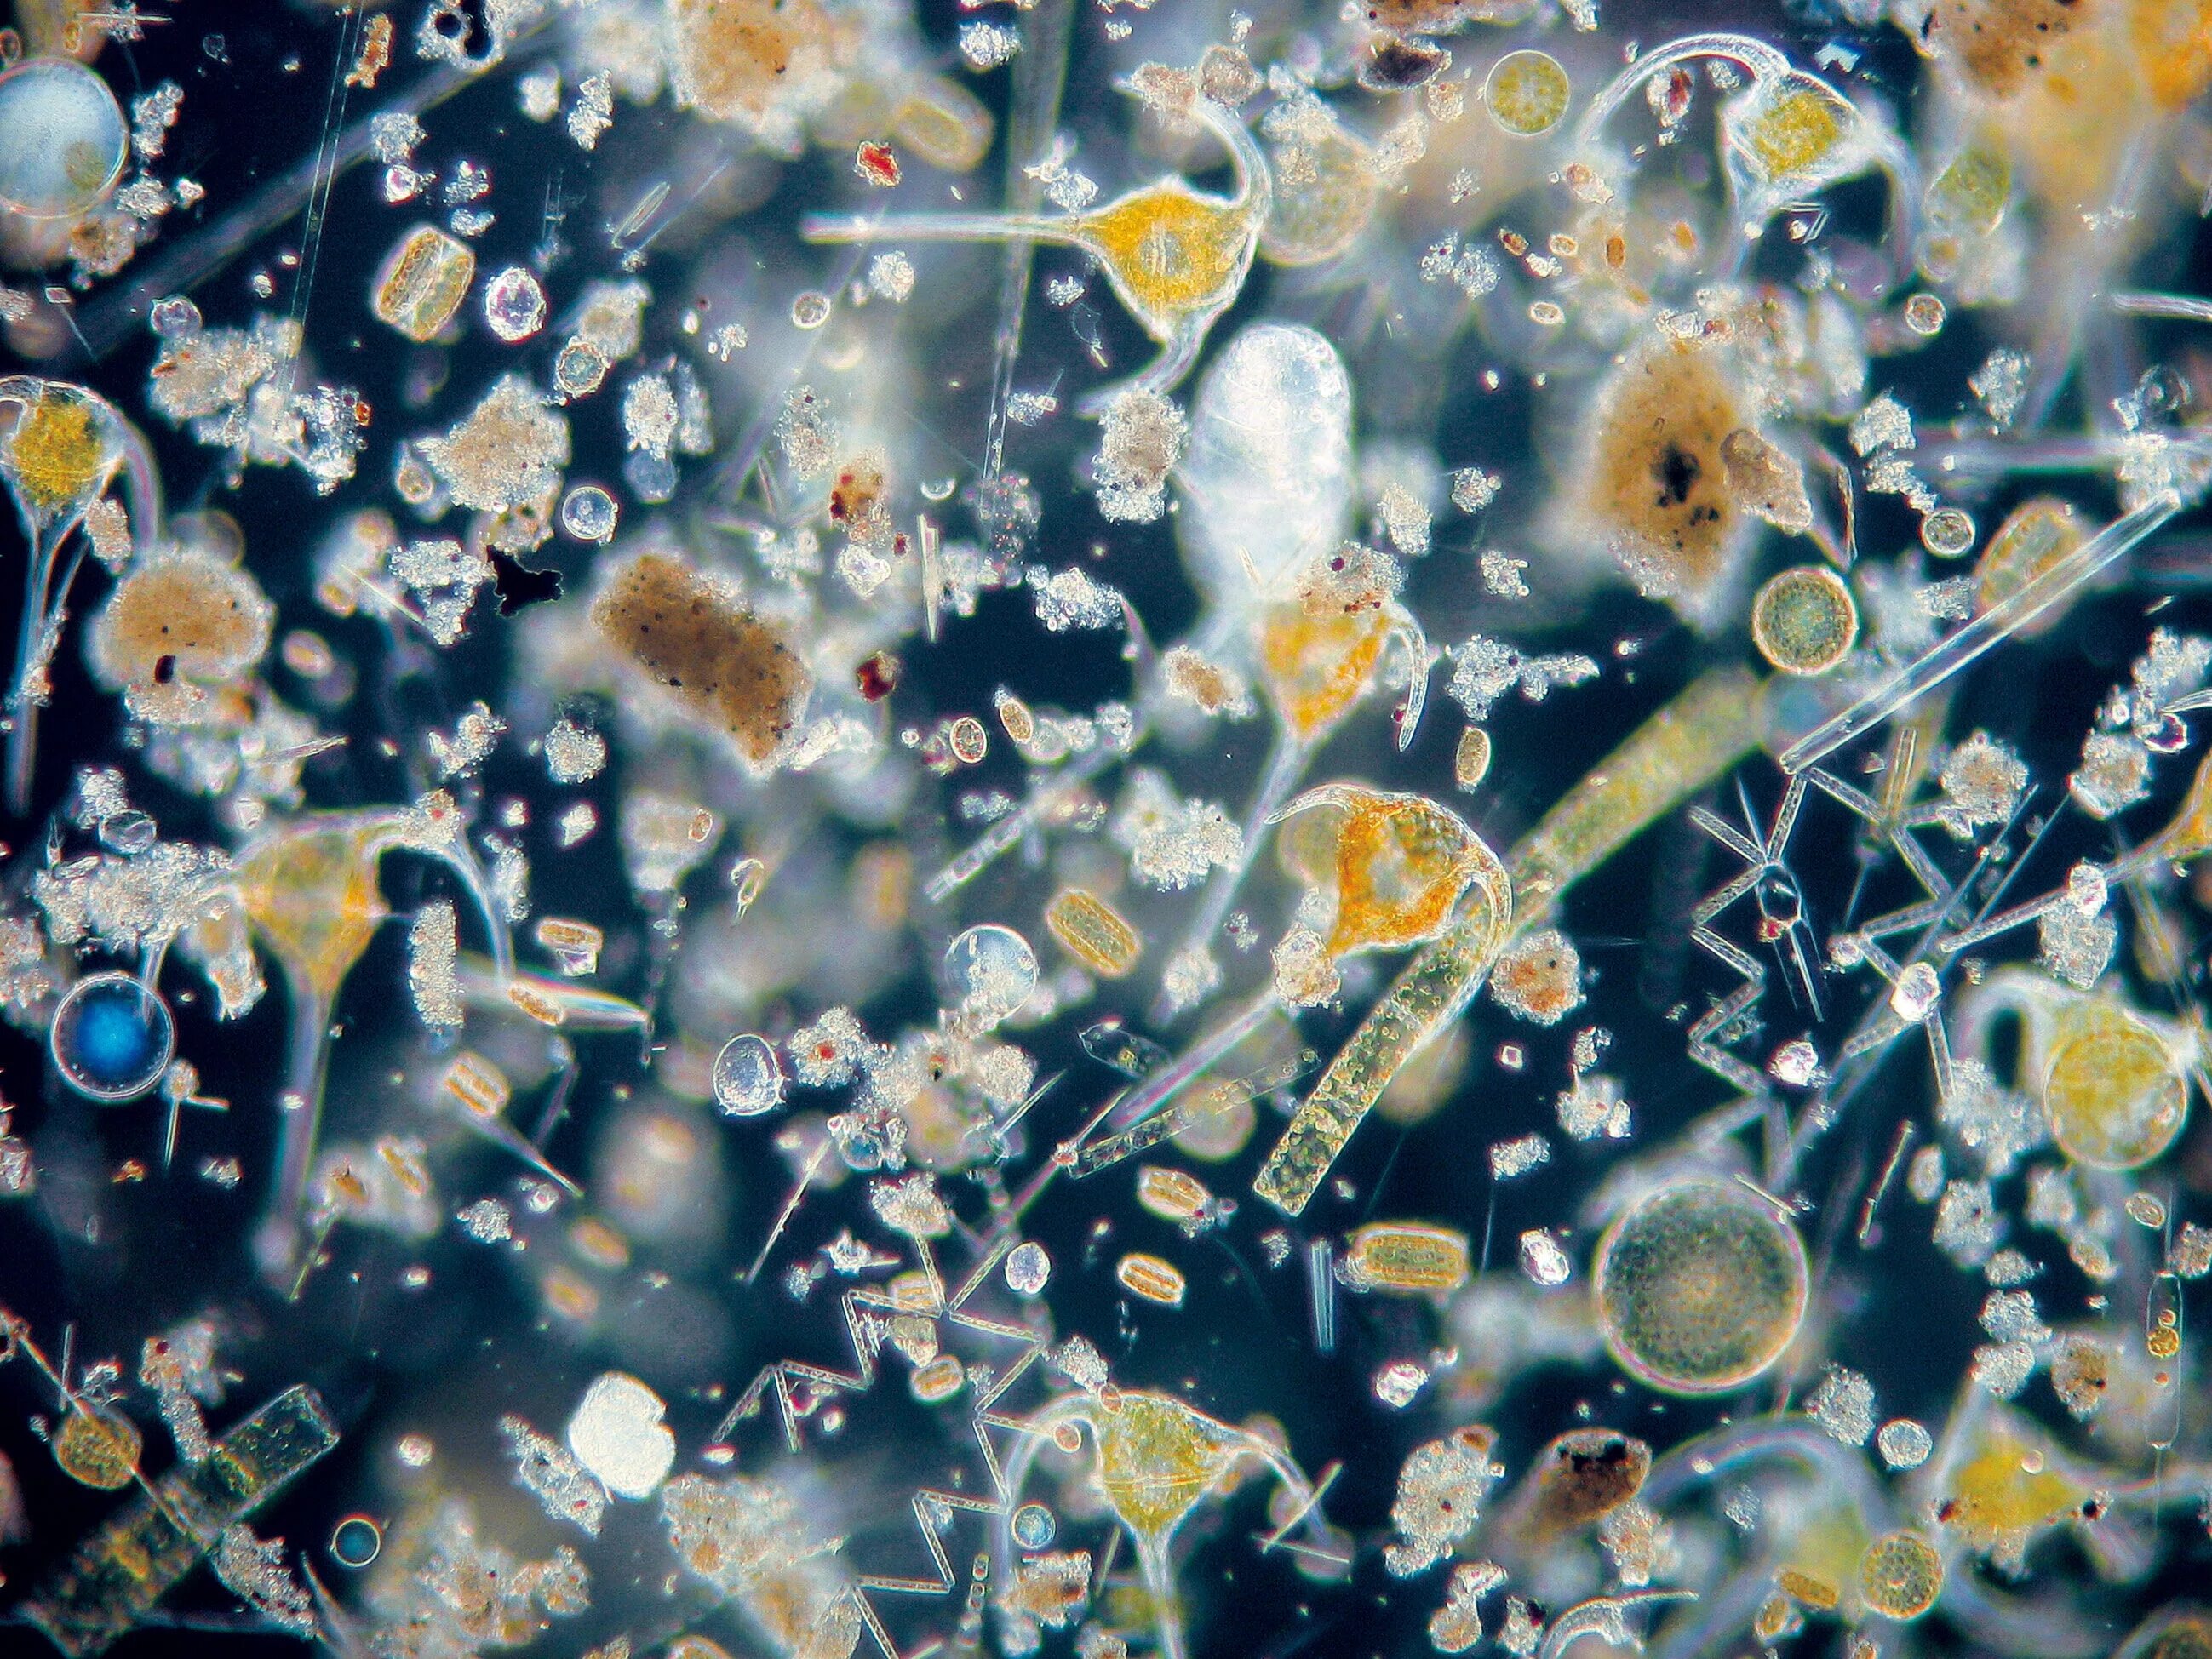 Бактерии в питьевой воде. Водопроводная вода под микроскопом. Водопроводная вода под микроскопо. Морская вода под микроскопом. Микроорганизмы в воде под микроскопом.